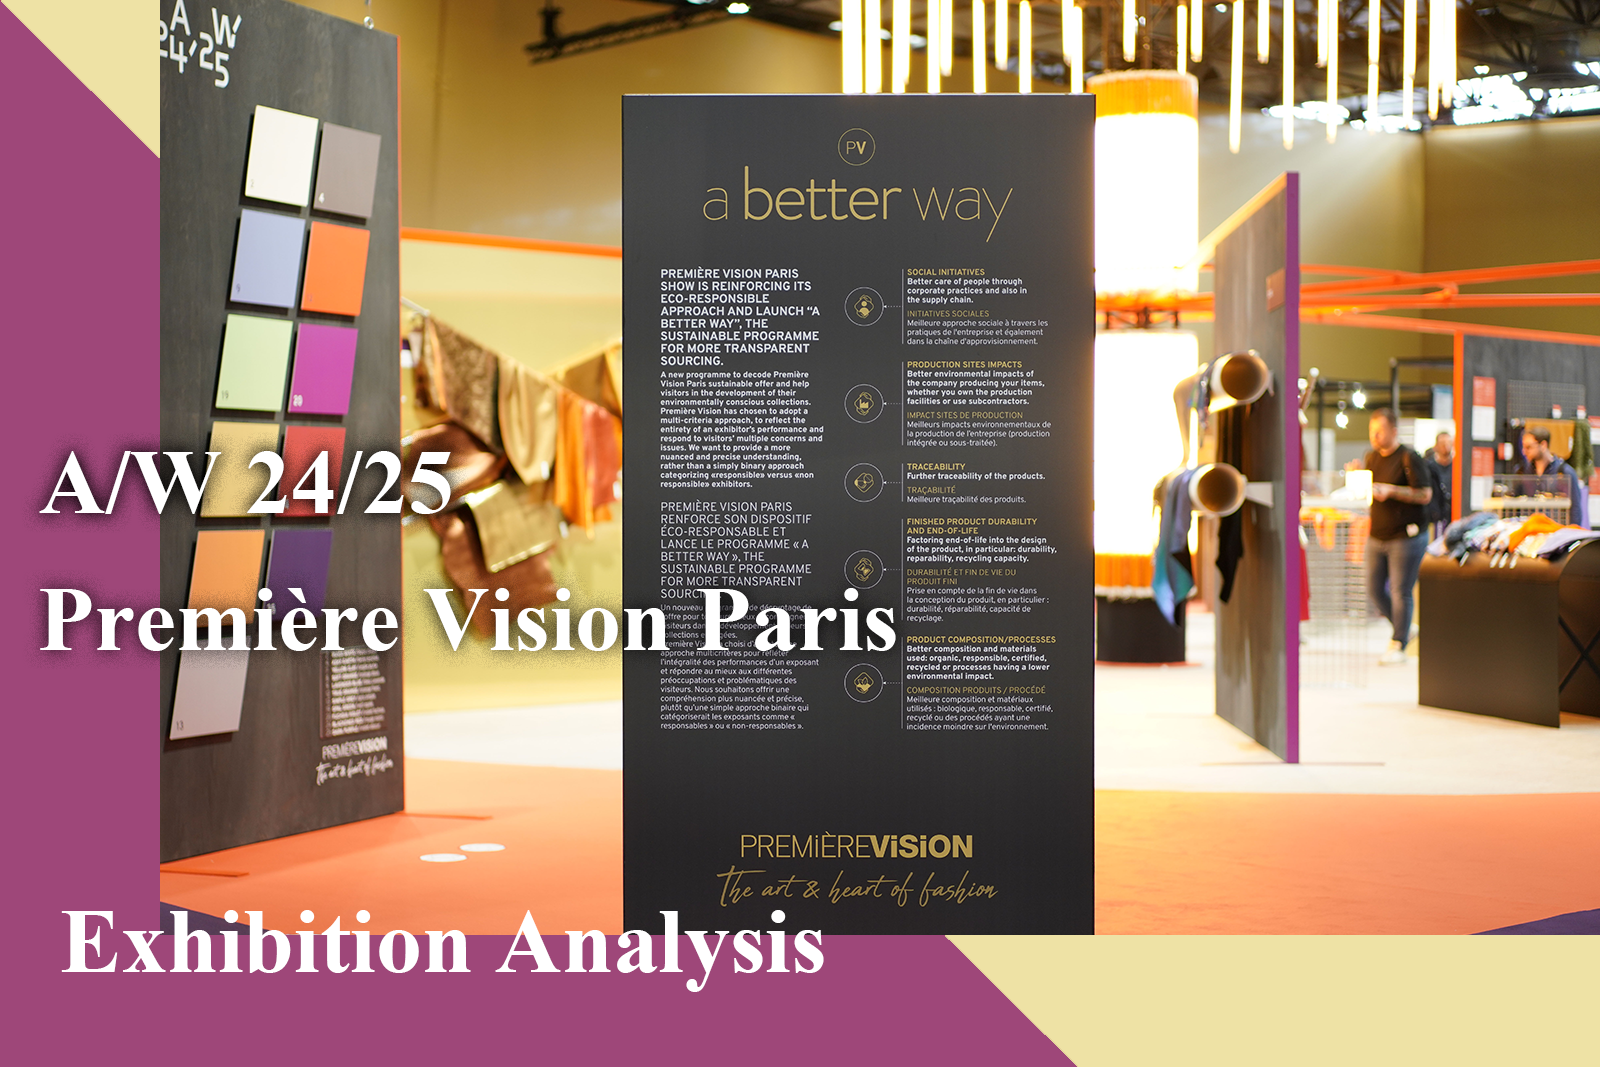 A/W 24/25 Comprehensive Exhibition Analysis of Première Vision Paris